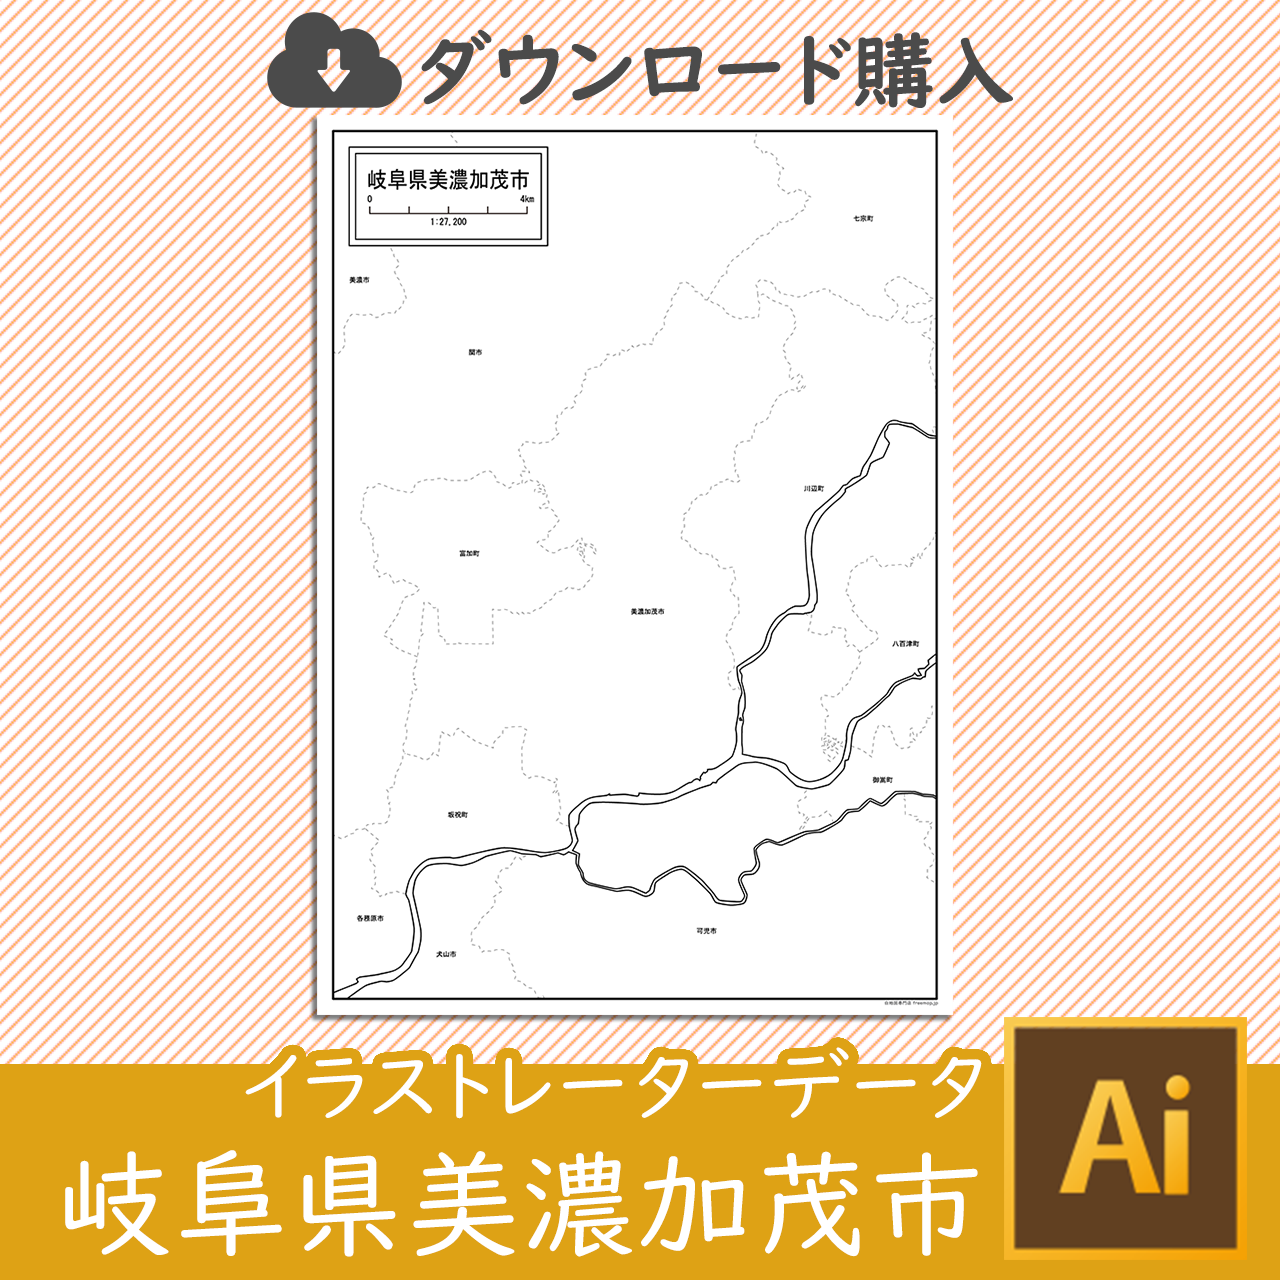 美濃加茂市のaiデータのサムネイル画像